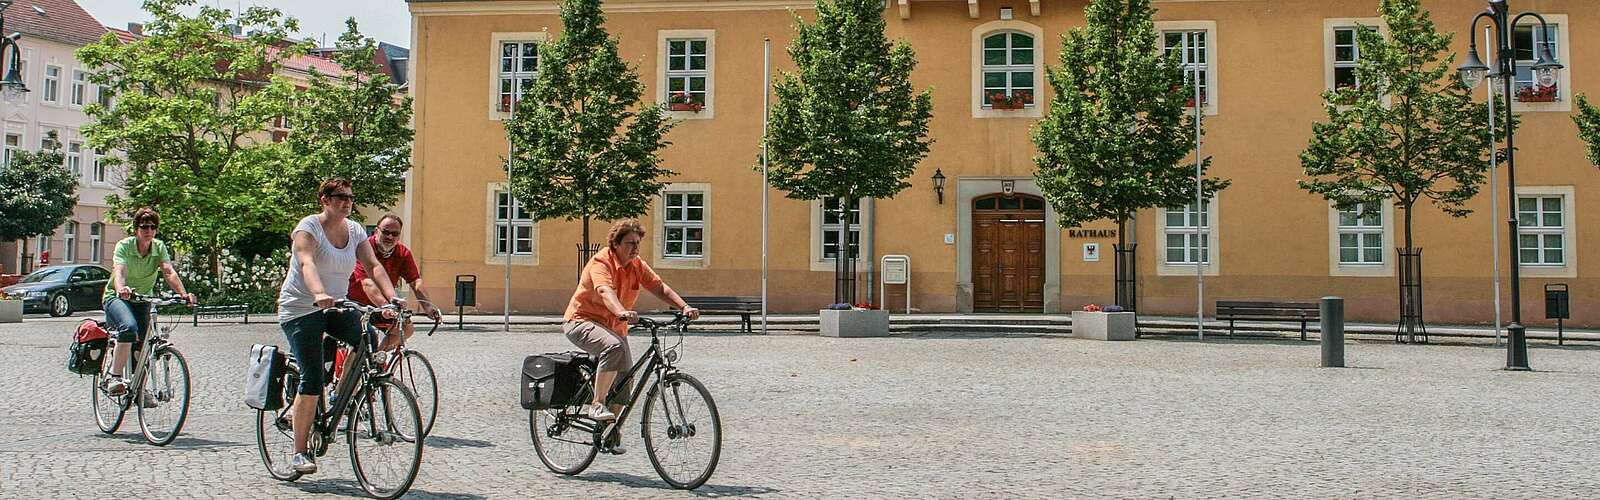 Radfahrer auf dem Marktplatz in Bad Liebenwerda,
        
    

        Foto: TMB-Fotoarchiv/Steffen Lehmann